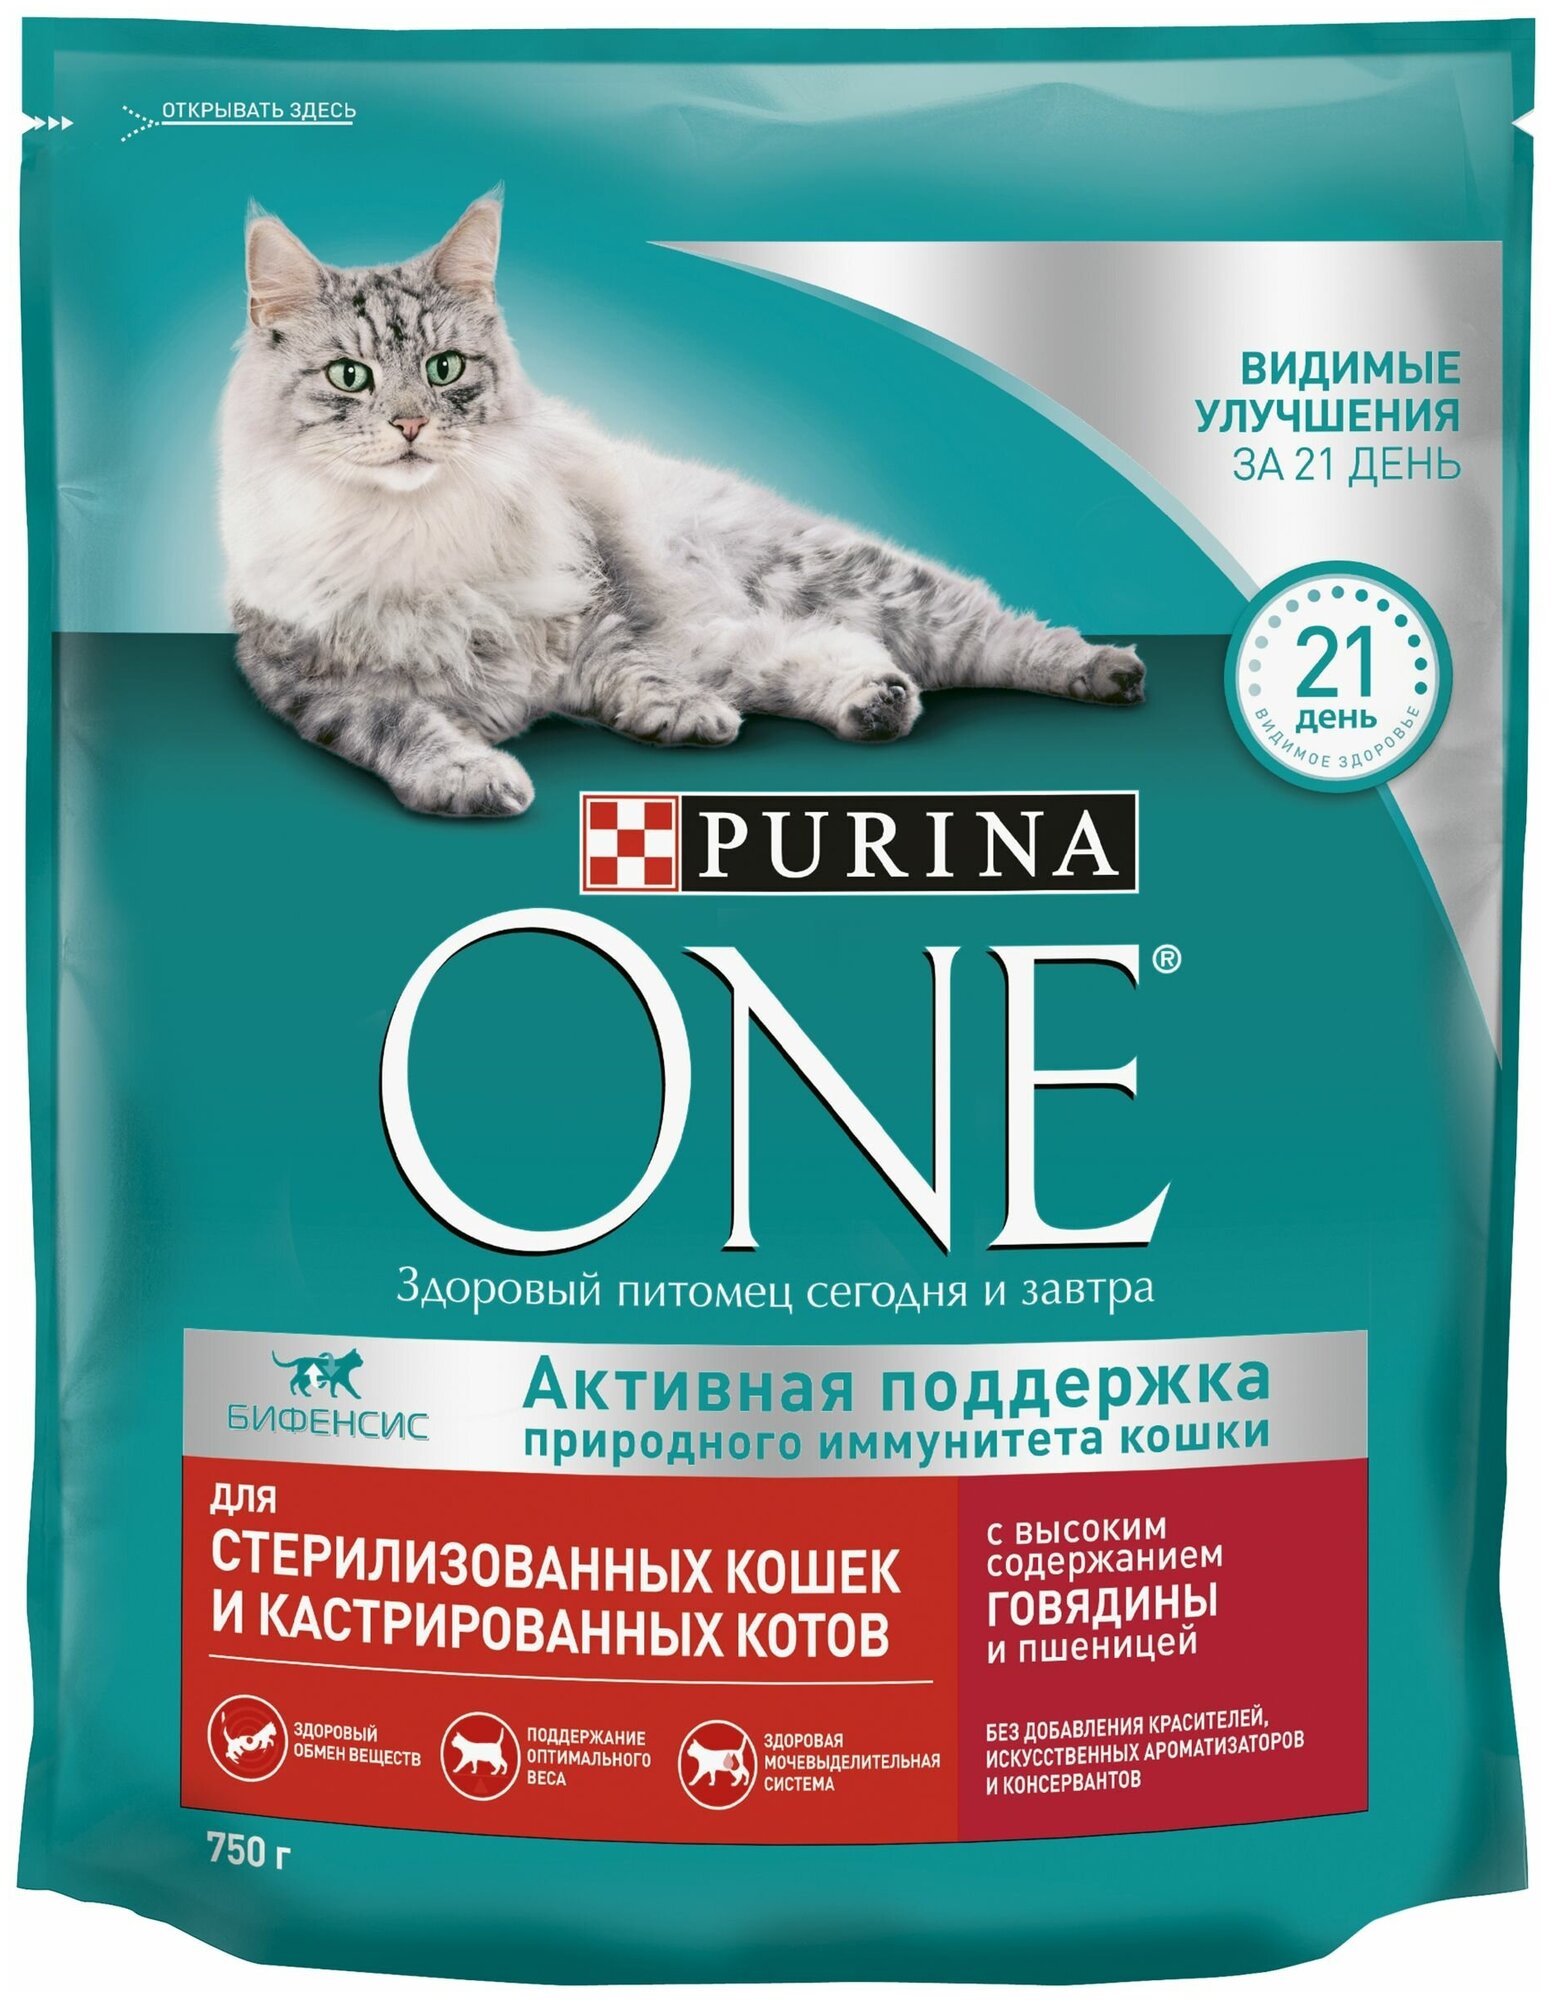 Сухой корм Purina ONE для стерилизованных кошек и кастрированных котов, с высоким содержанием говядины и пшеницей, Пакет, 750 г х 1 шт